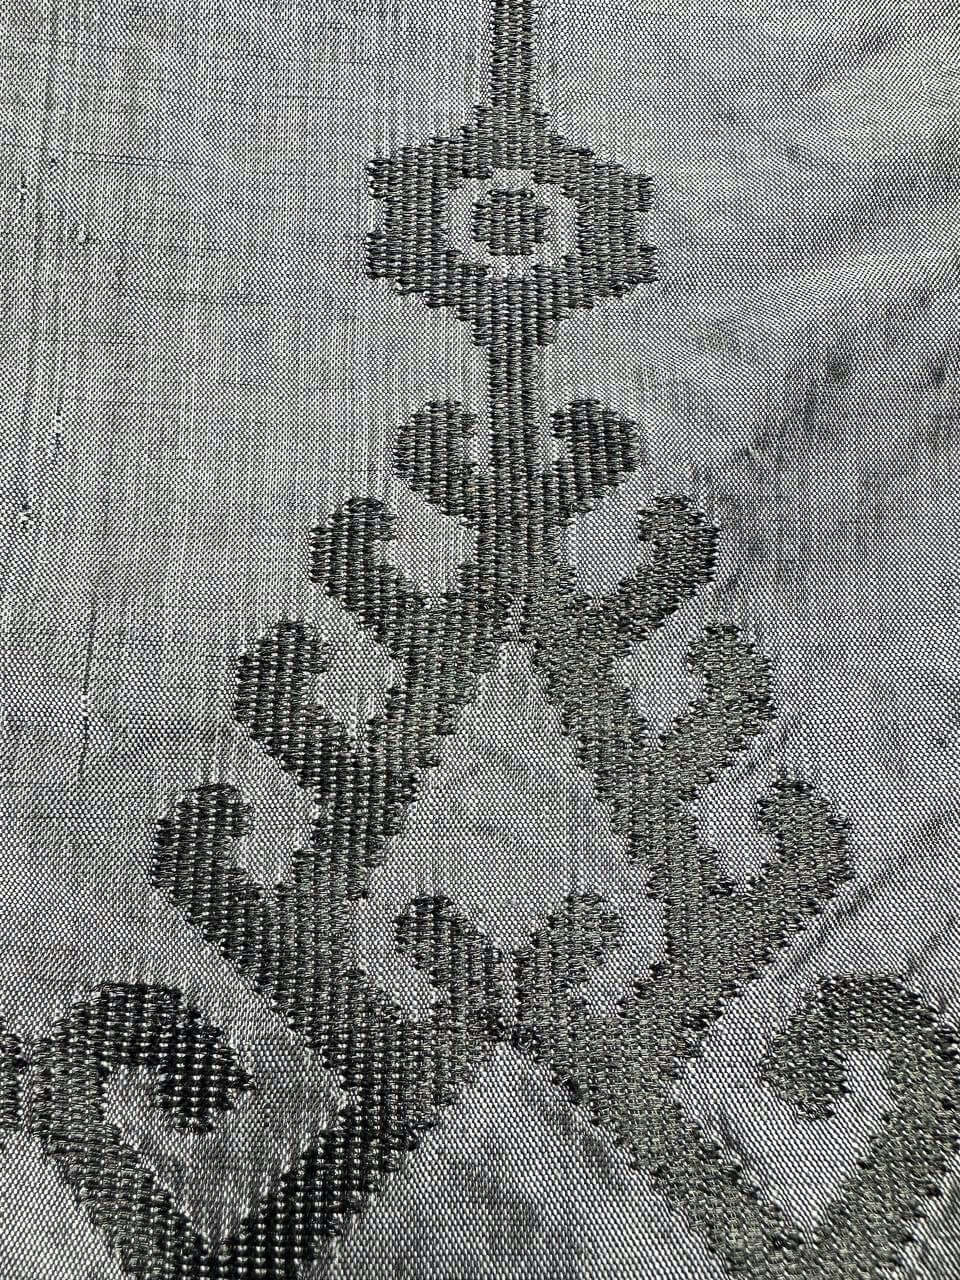 Iban Rebung (Grey) handwoven silk songket shawl textile